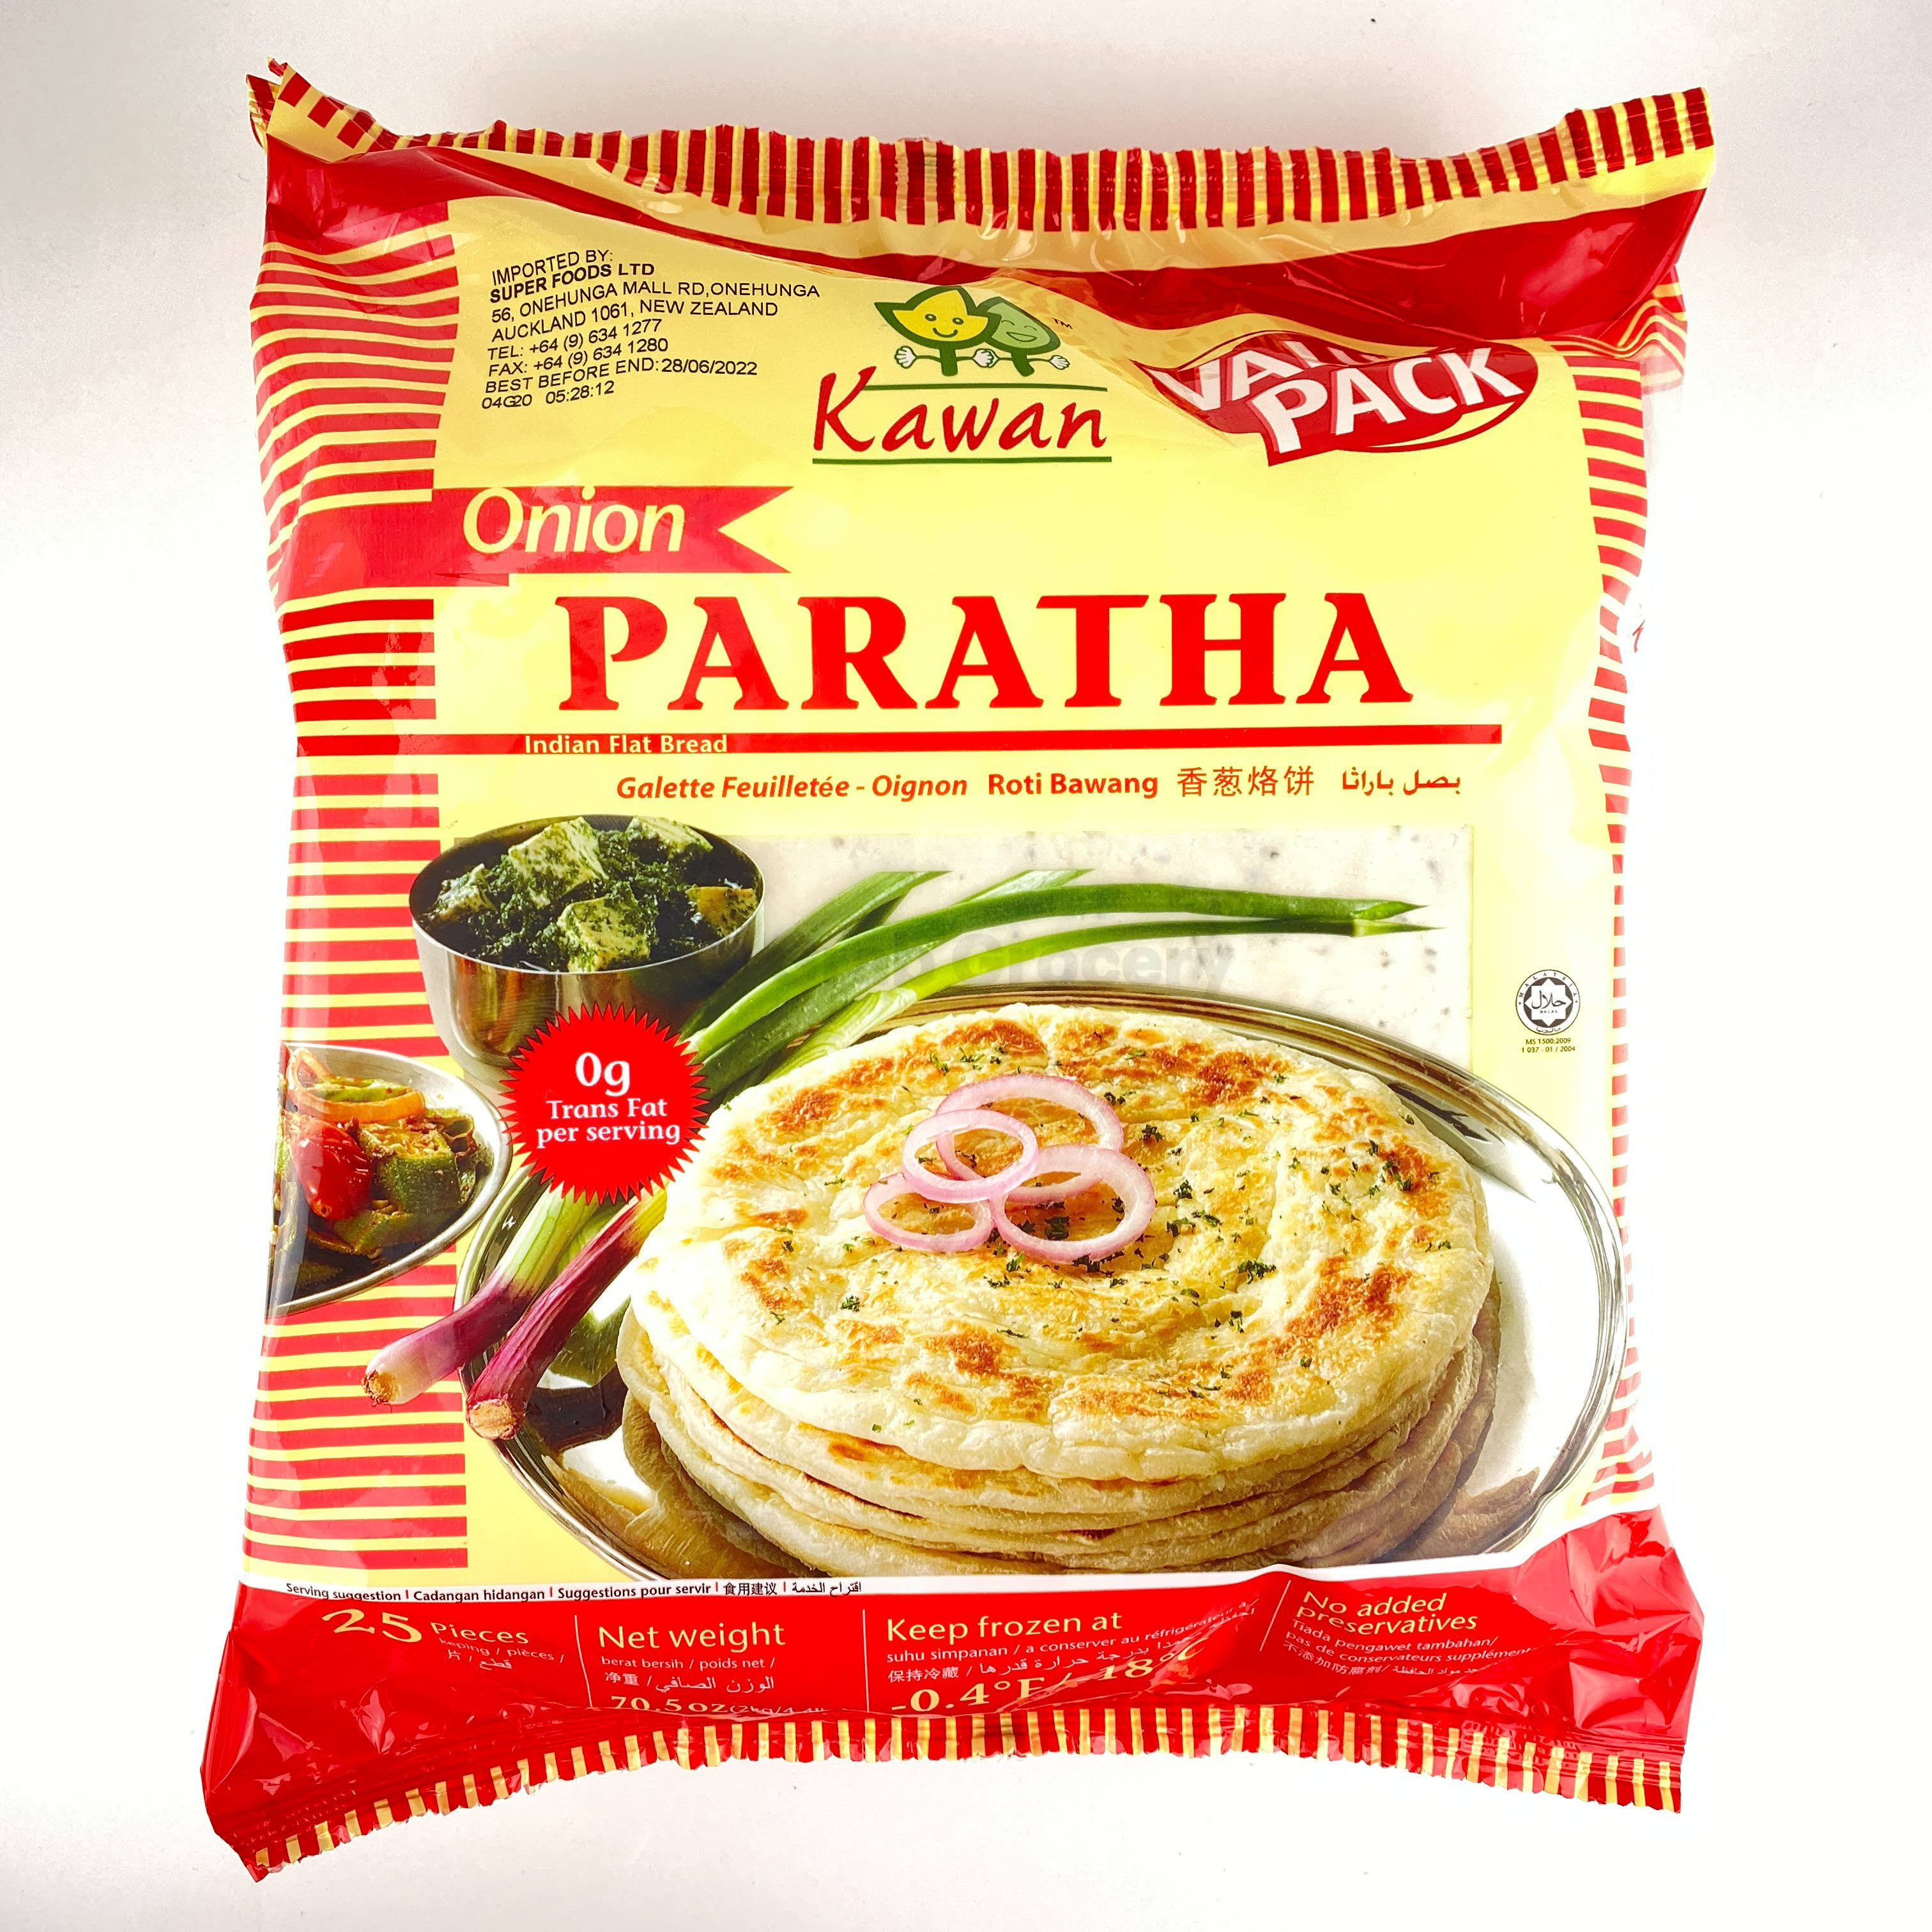 Kawan Paratha Onion